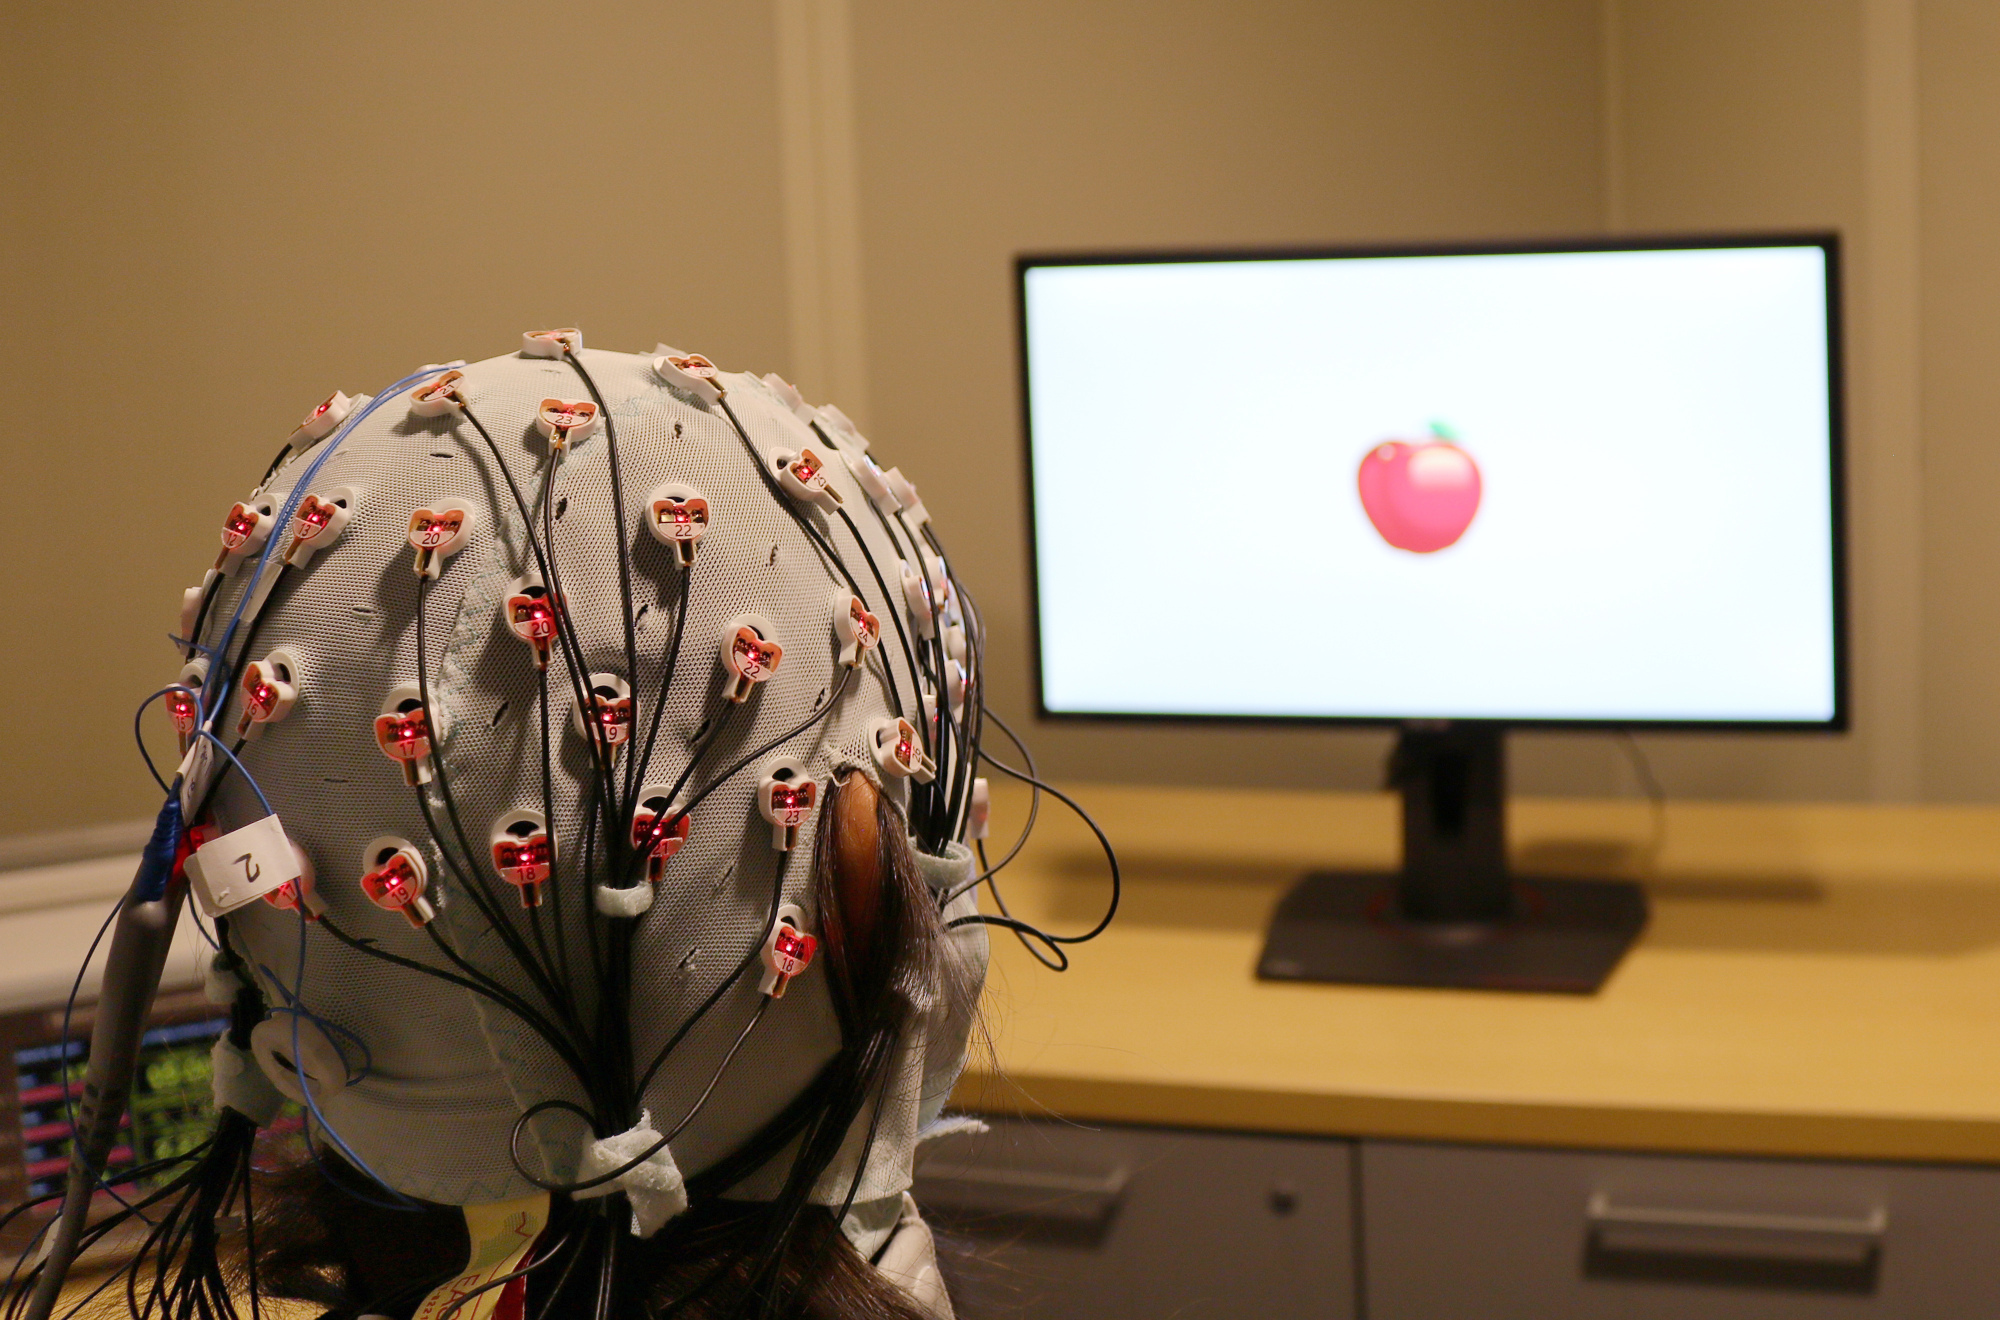 Zap cap: Electrical brain stimulation seen boosting memory